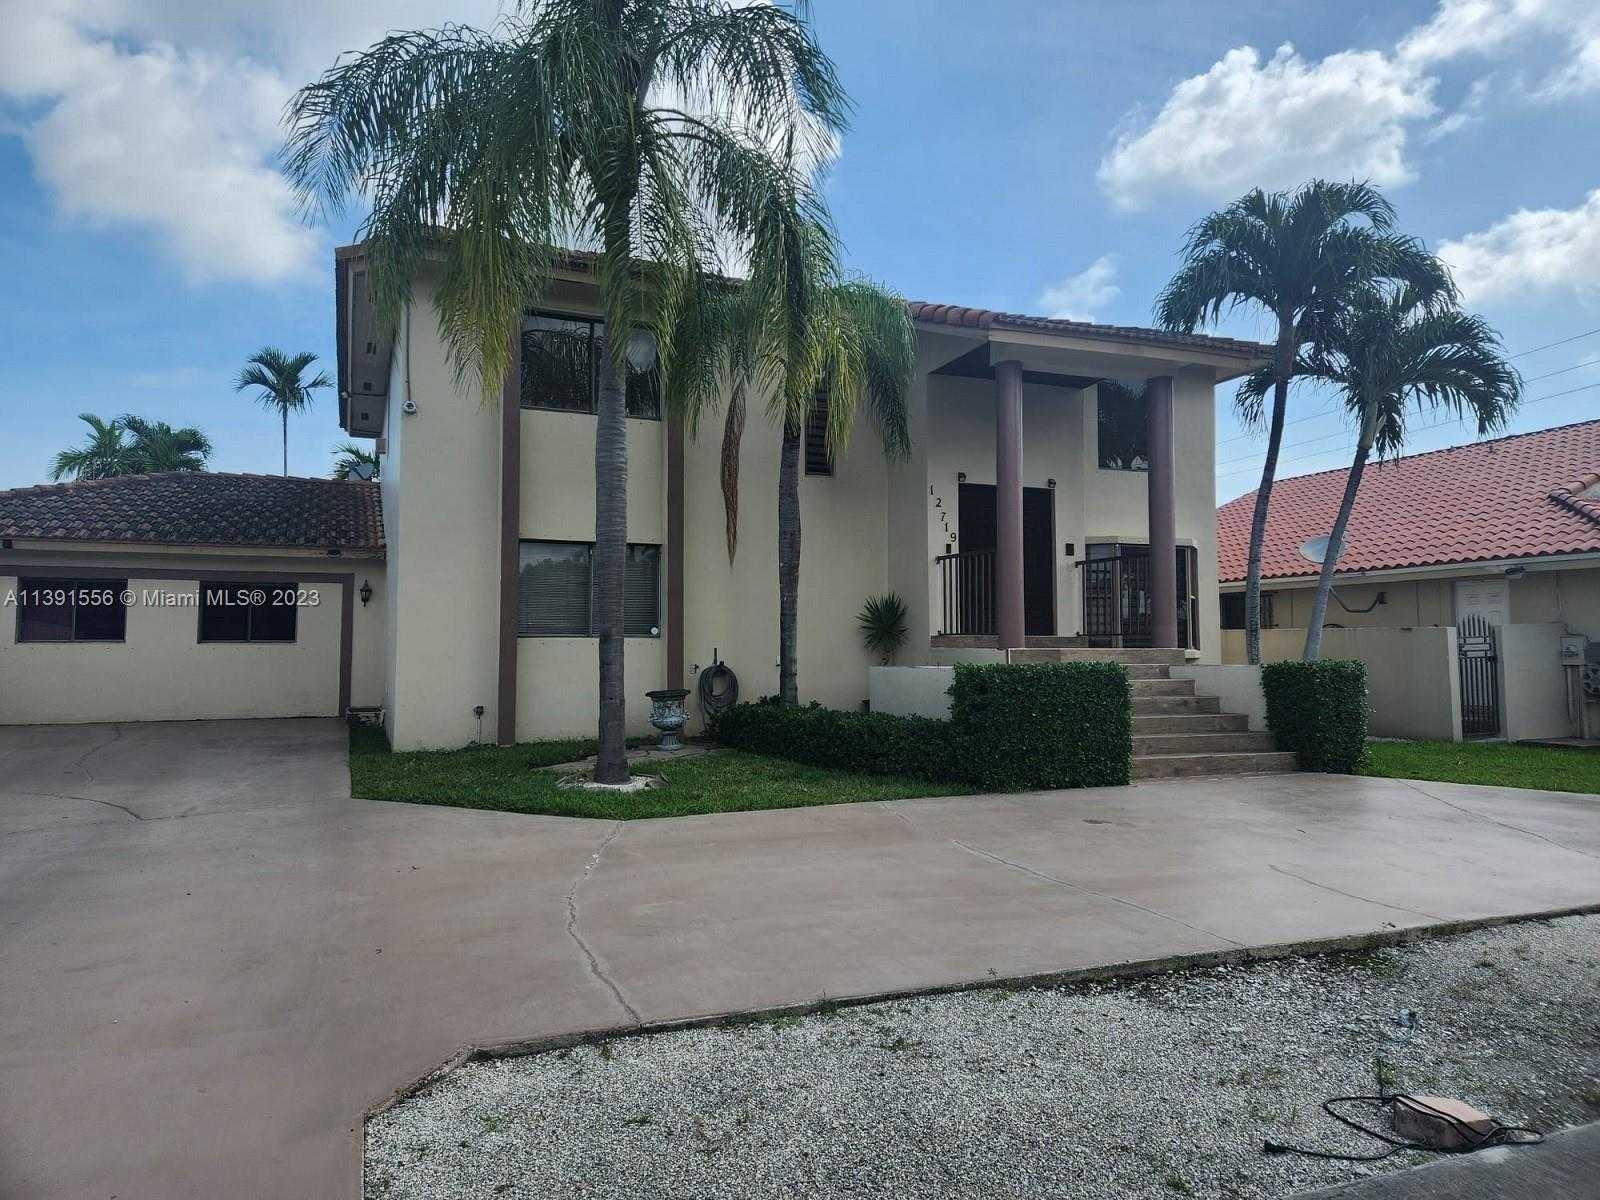 View Miami, FL 33175 house